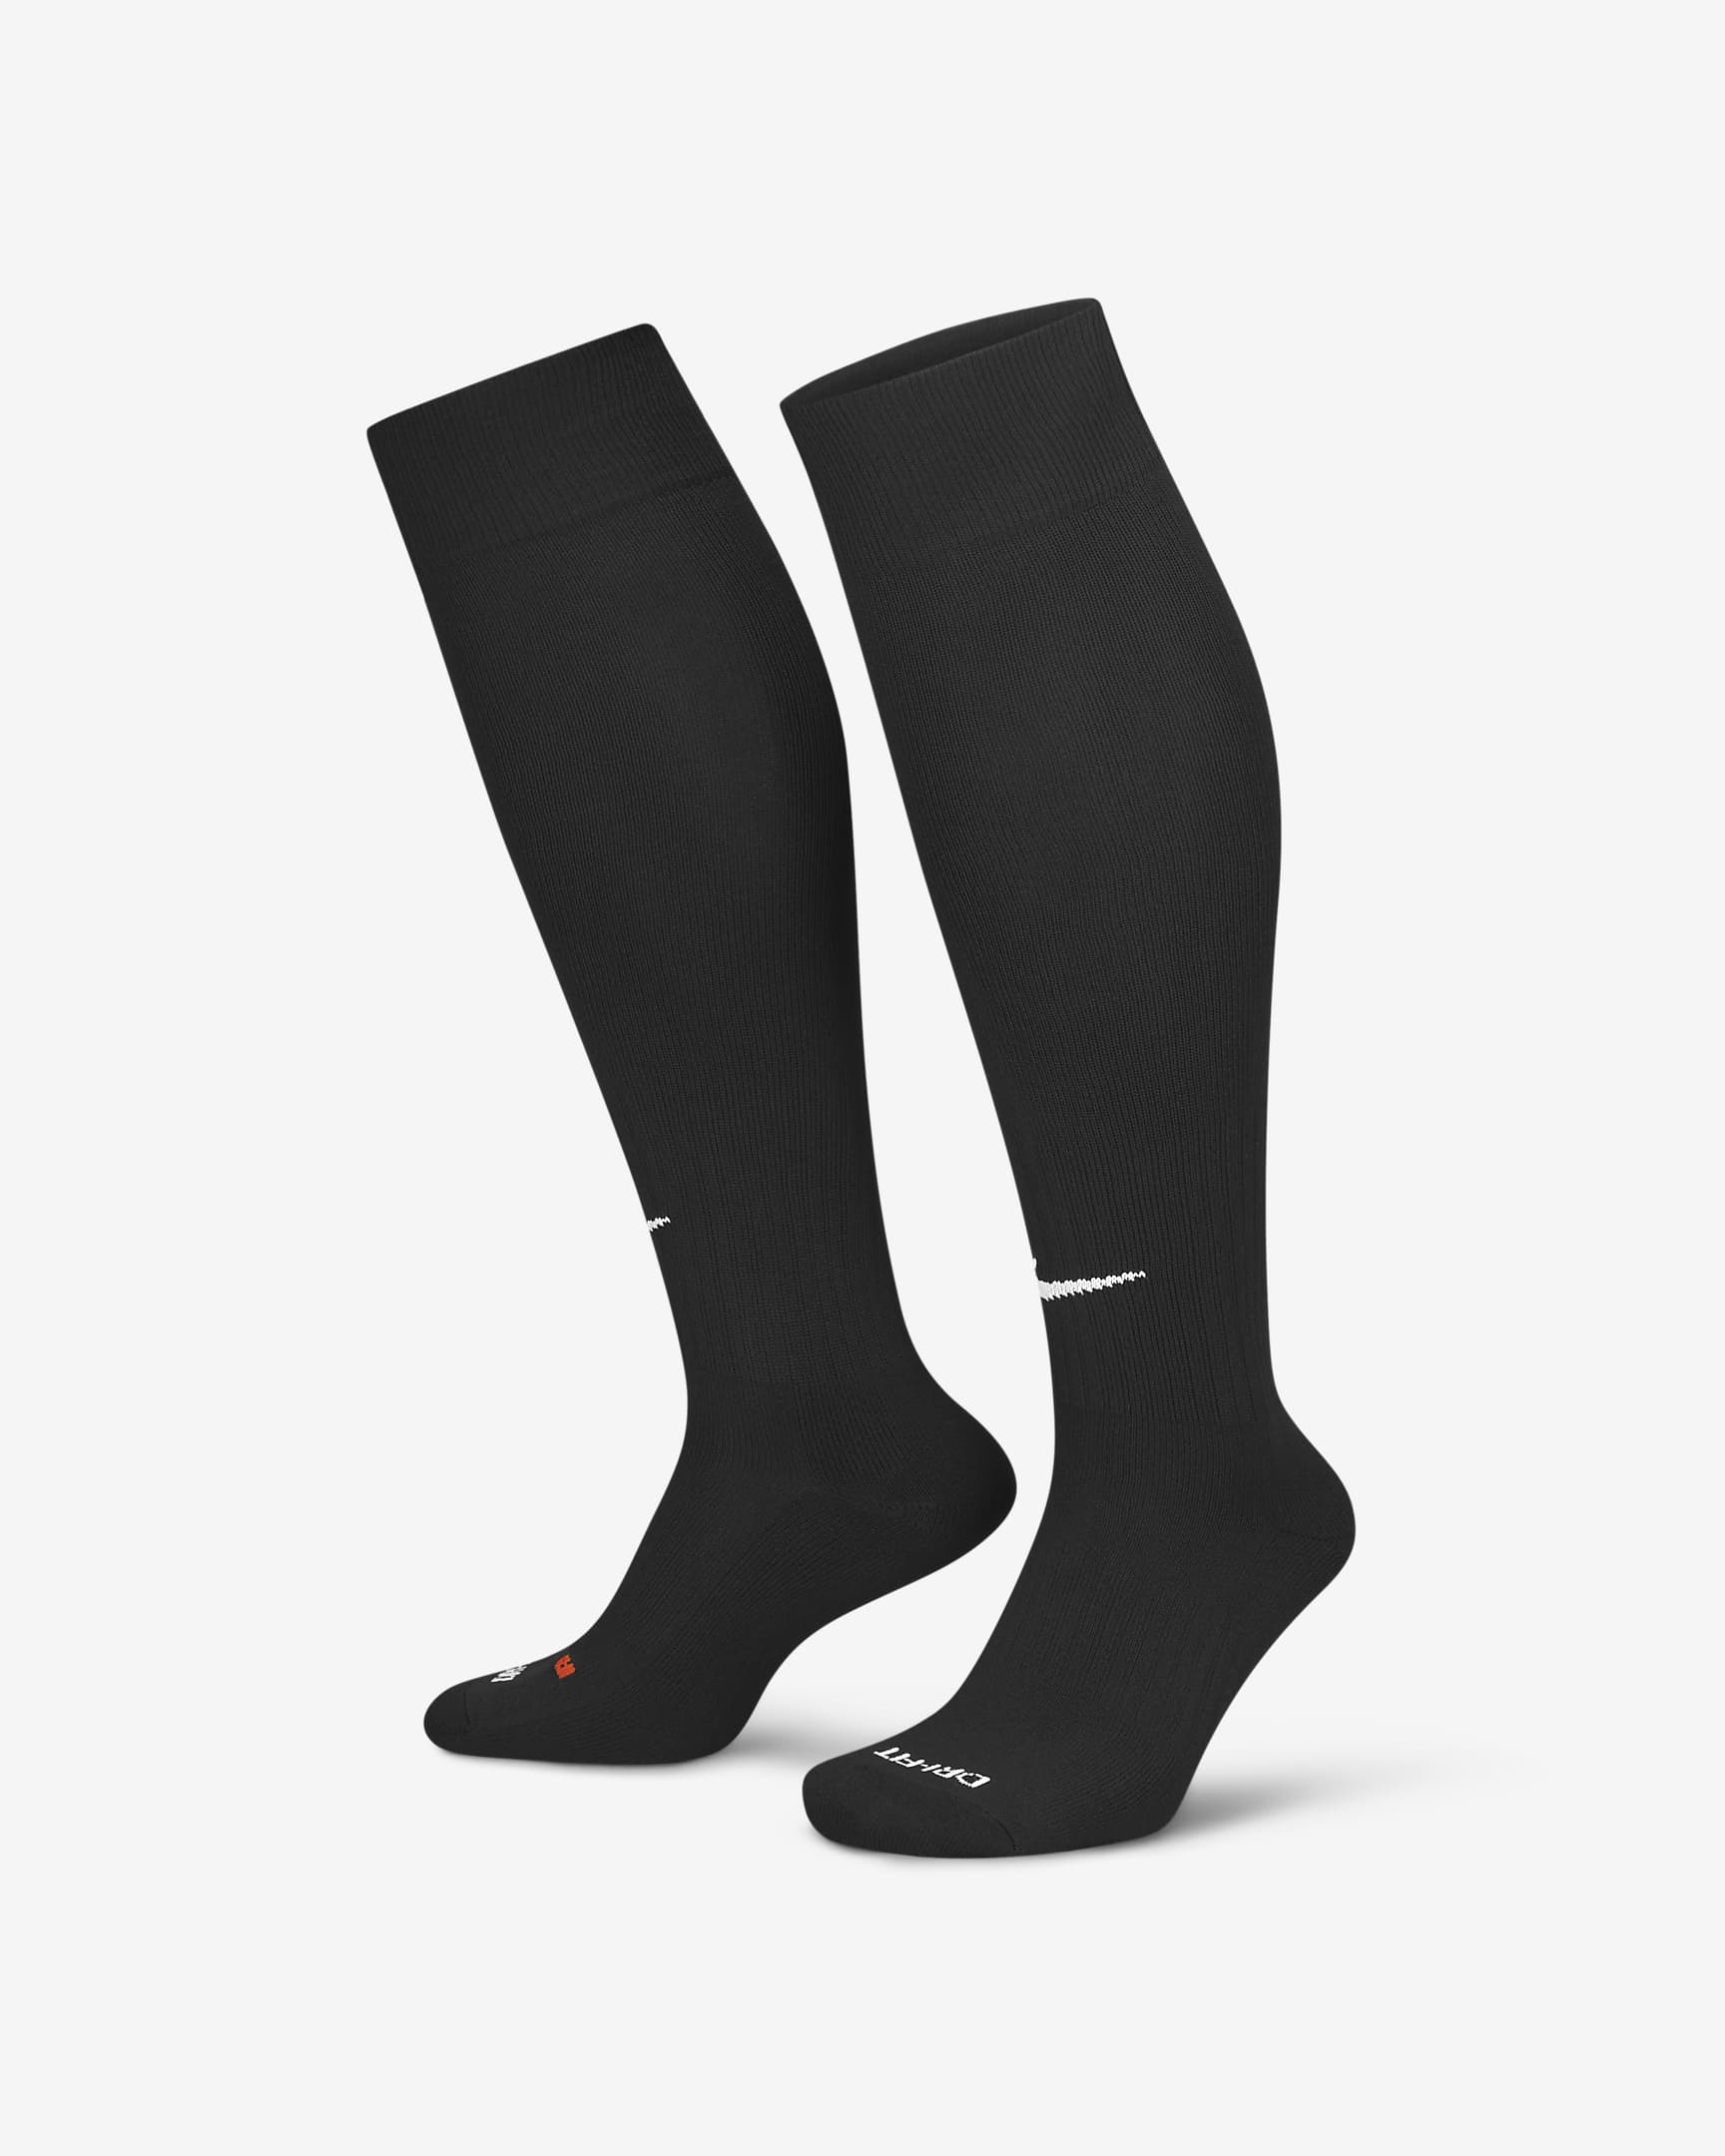 Nike Classic 2 Cushioned Over-the-Calf Socks. Nike PH